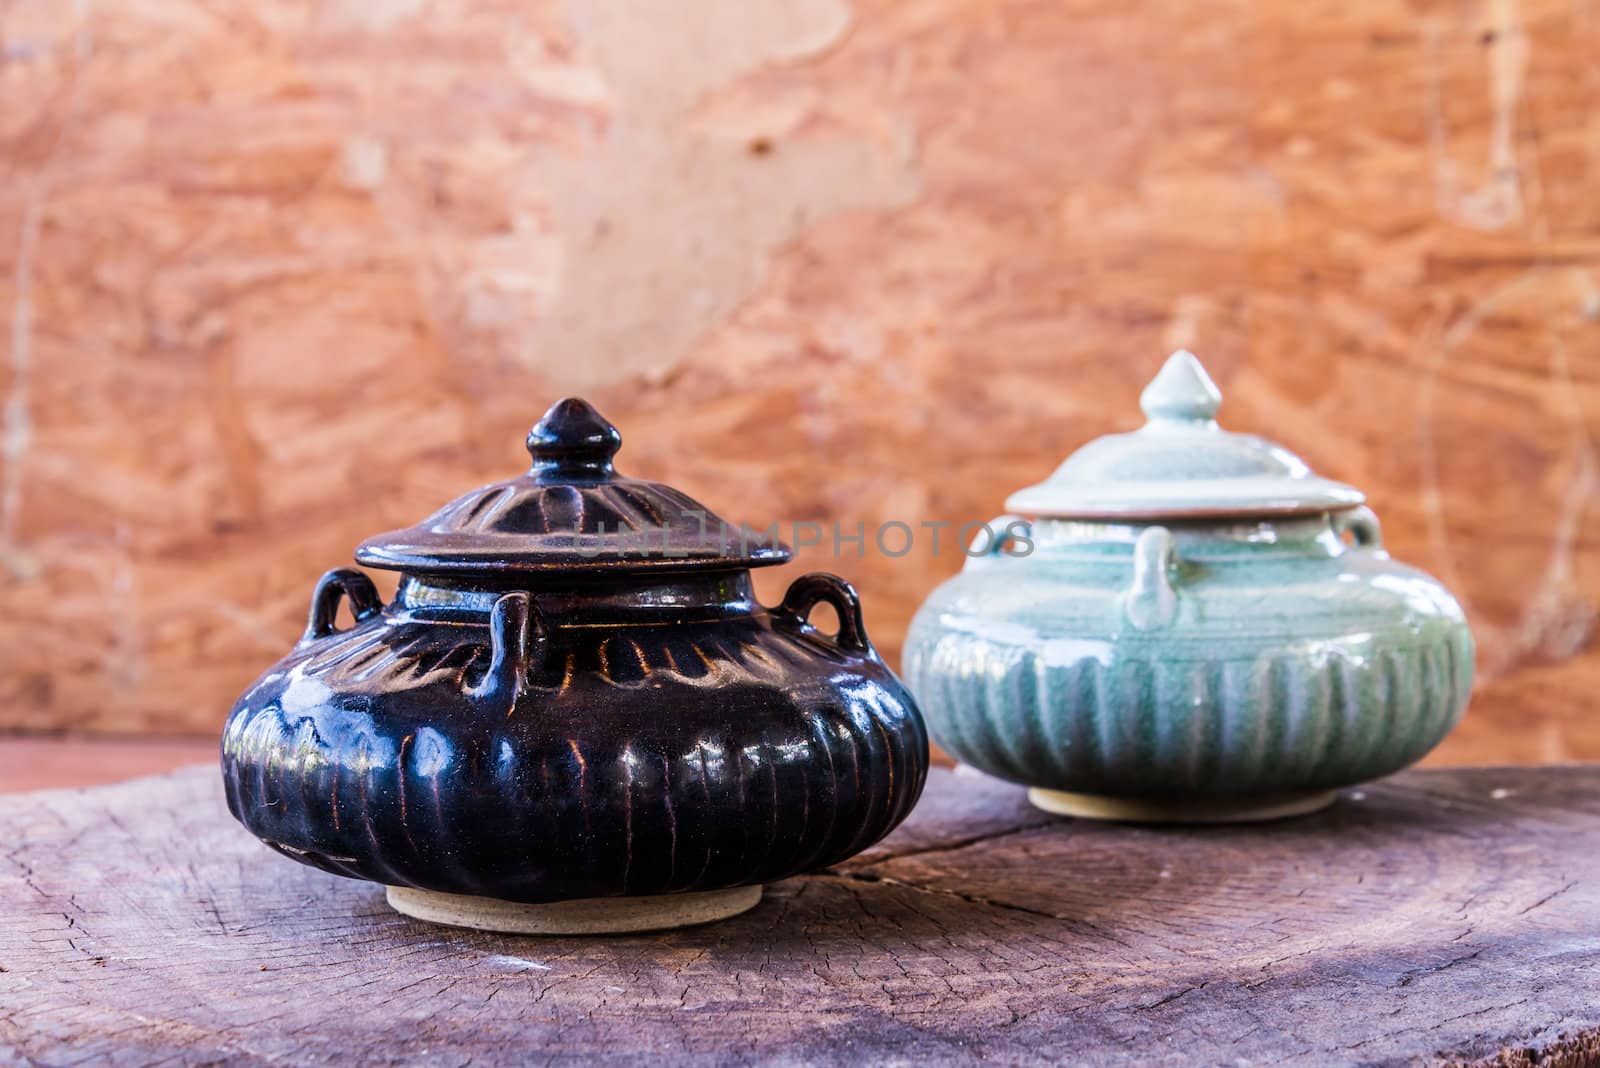 vintage ceramic pot on wood